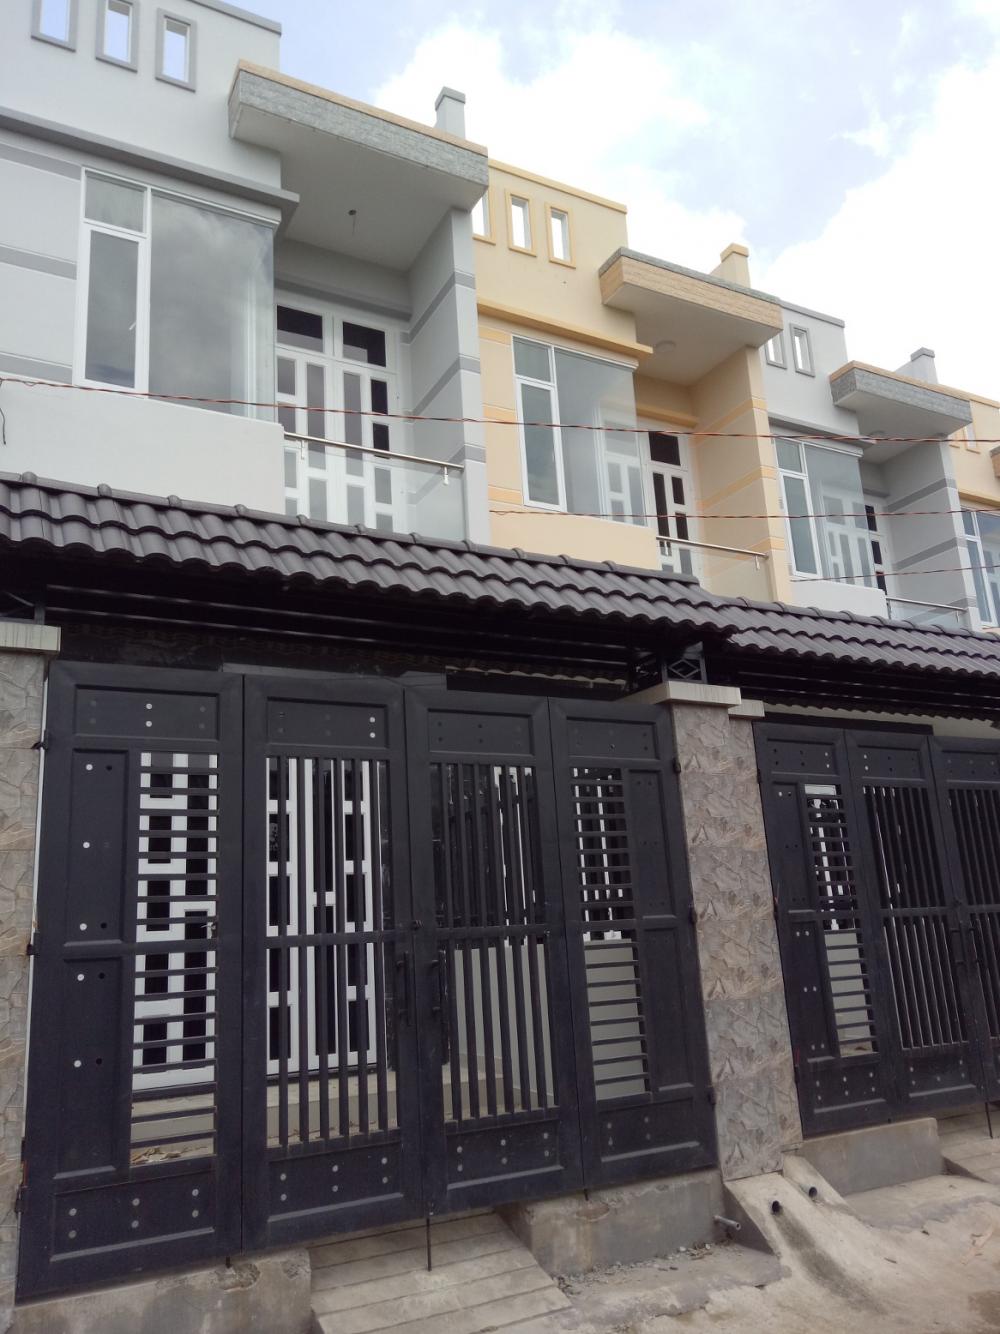 Sổ hồng chính chủ nhà mới bán 1 trệt, 1 lầu, 2PN, diện tích 36m2, Quách Điêu, Vĩnh Lộc A